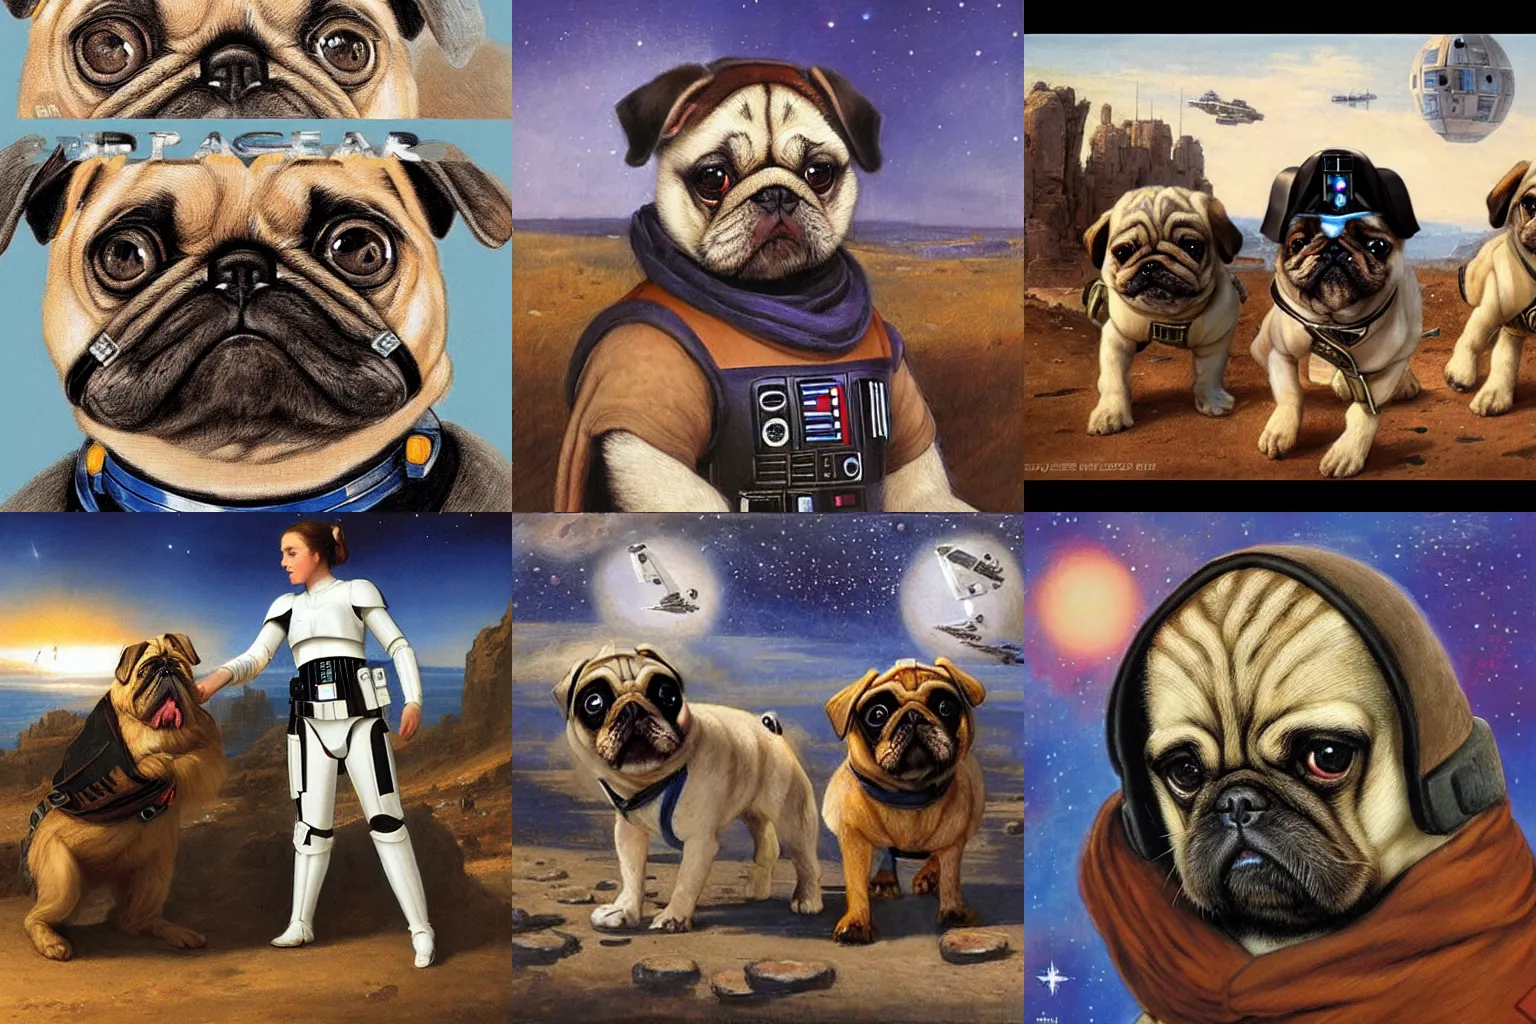 Prompt: Star Wars pugs by Eugene de Blaas